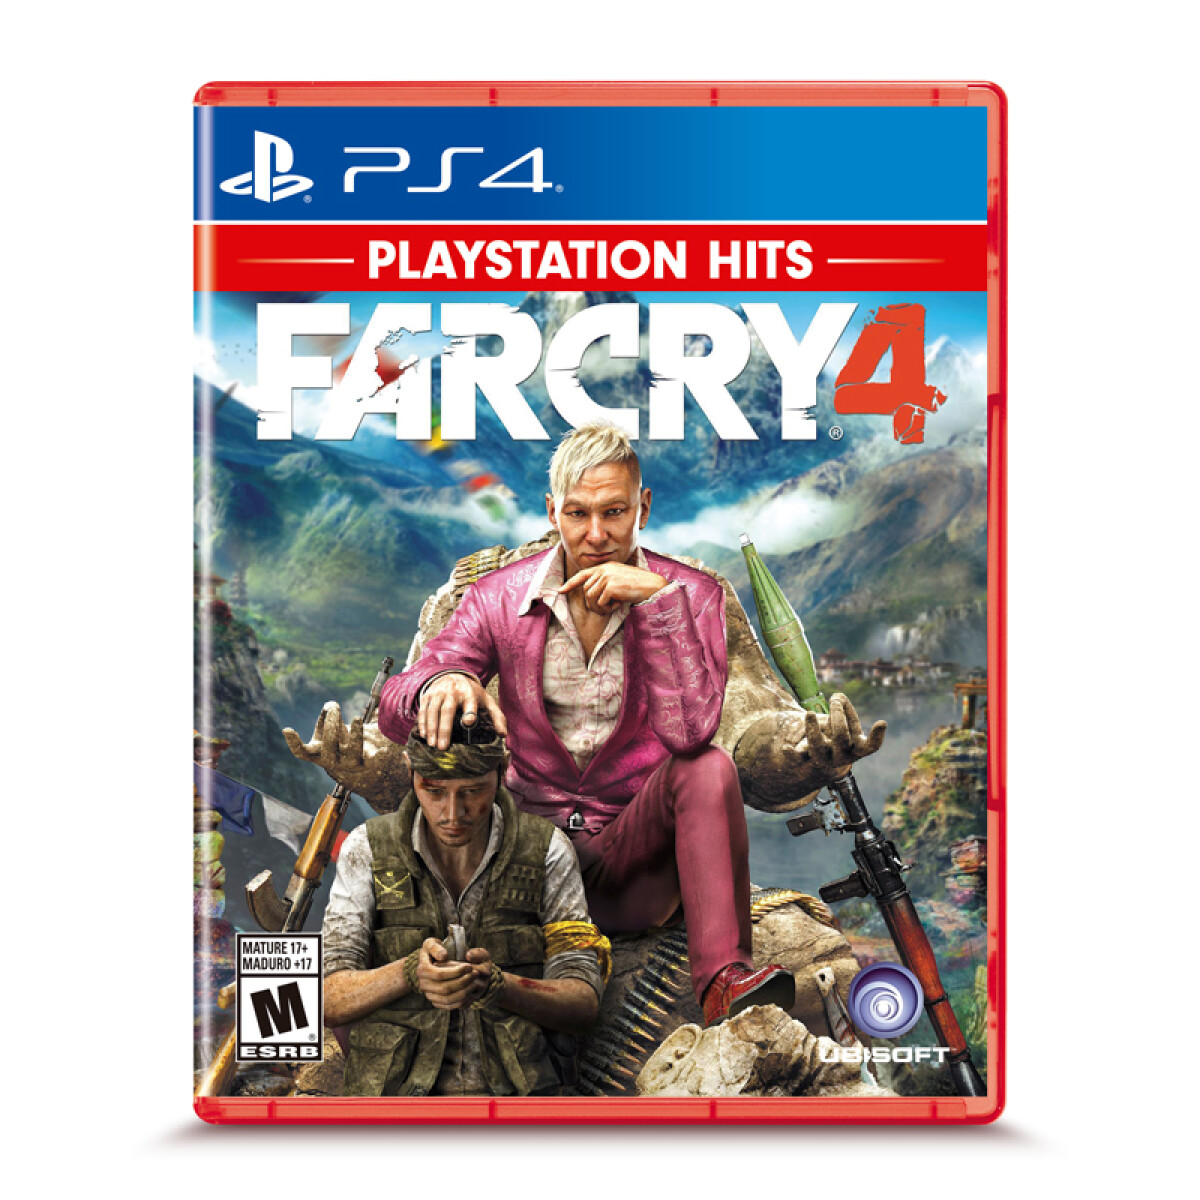 Juego PS4 Far Cry 4 Hits 